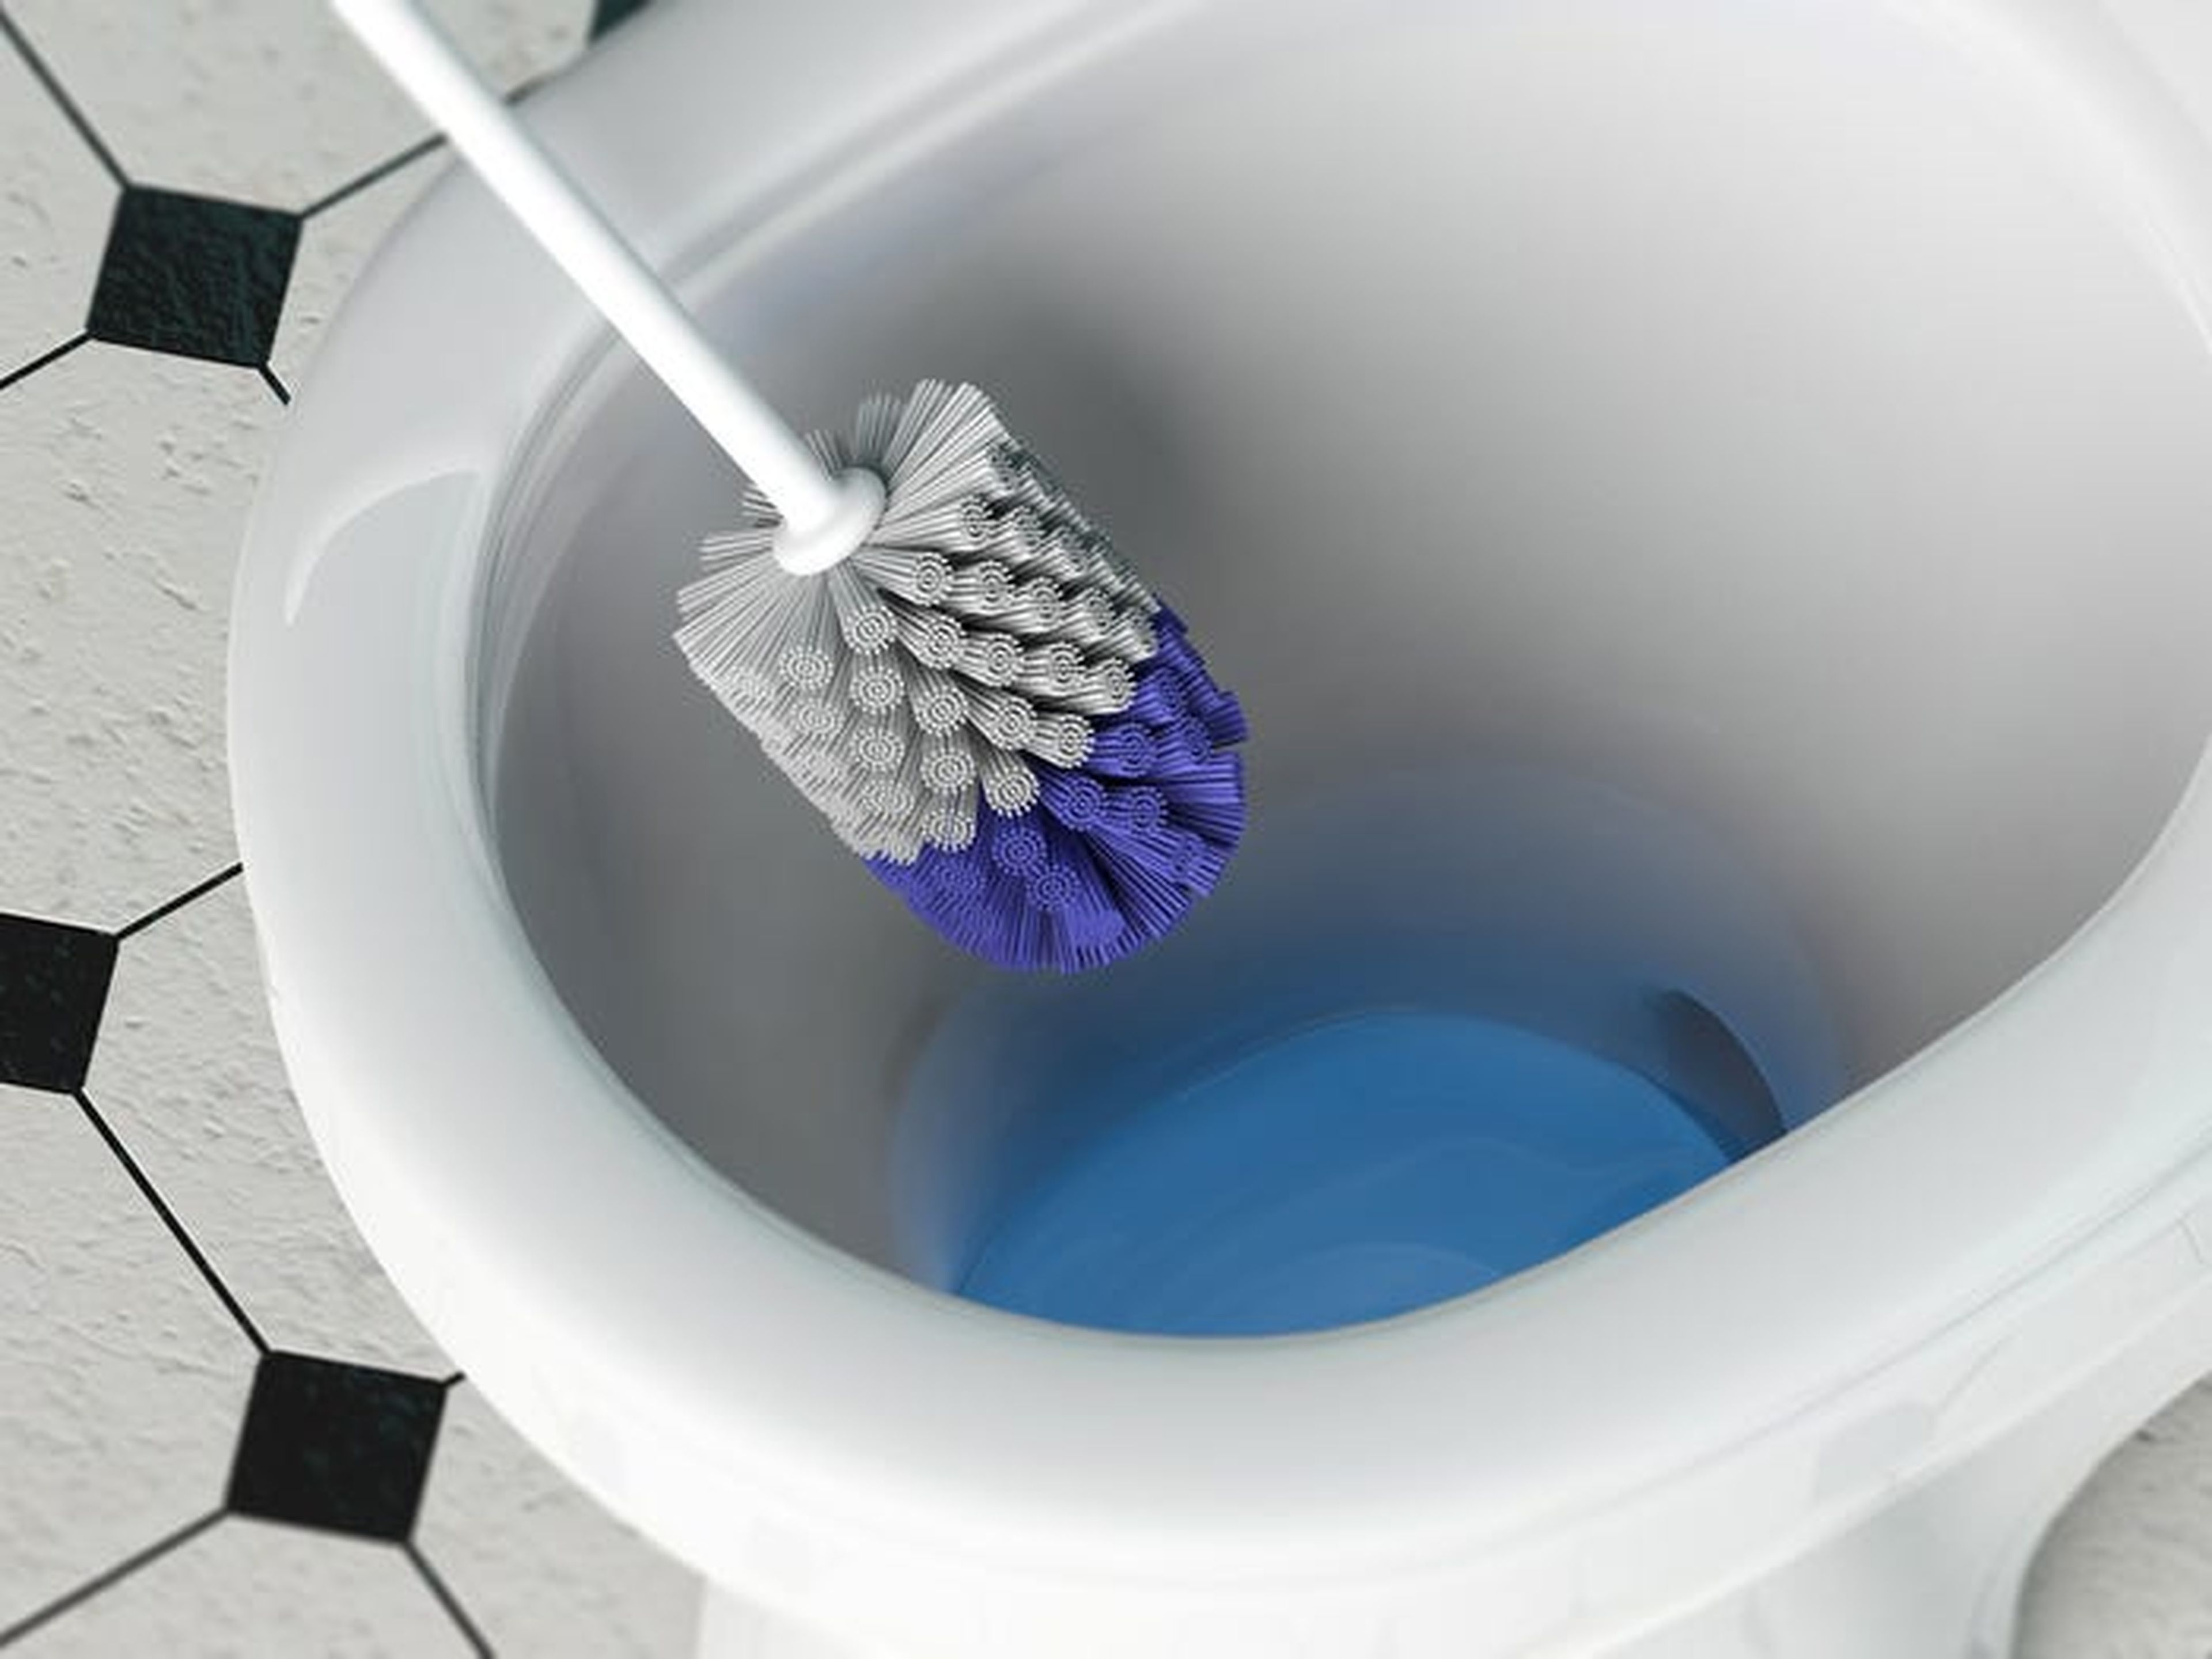 Desinfecta los cepillos del inodoro después de cada uso.